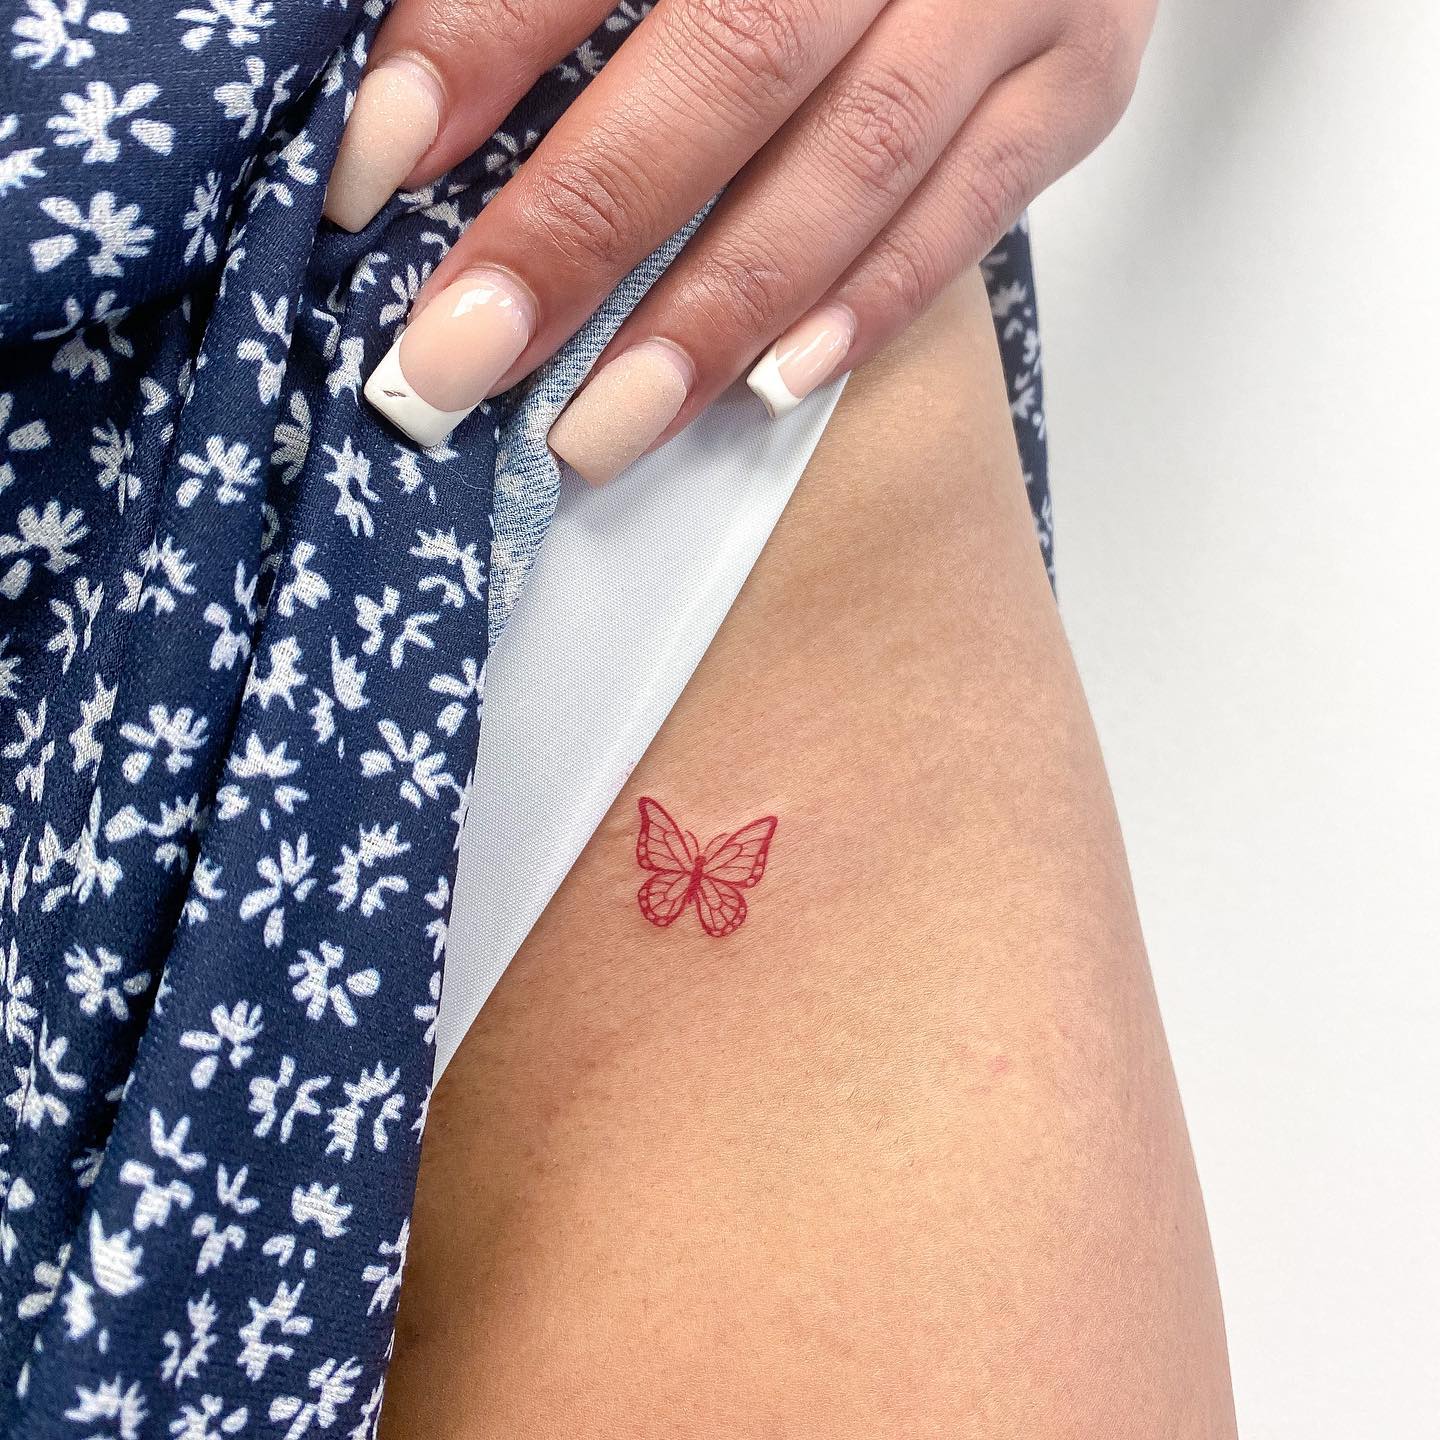 Kleines rotes Schmetterlings-Tattoo auf dem Oberschenkel